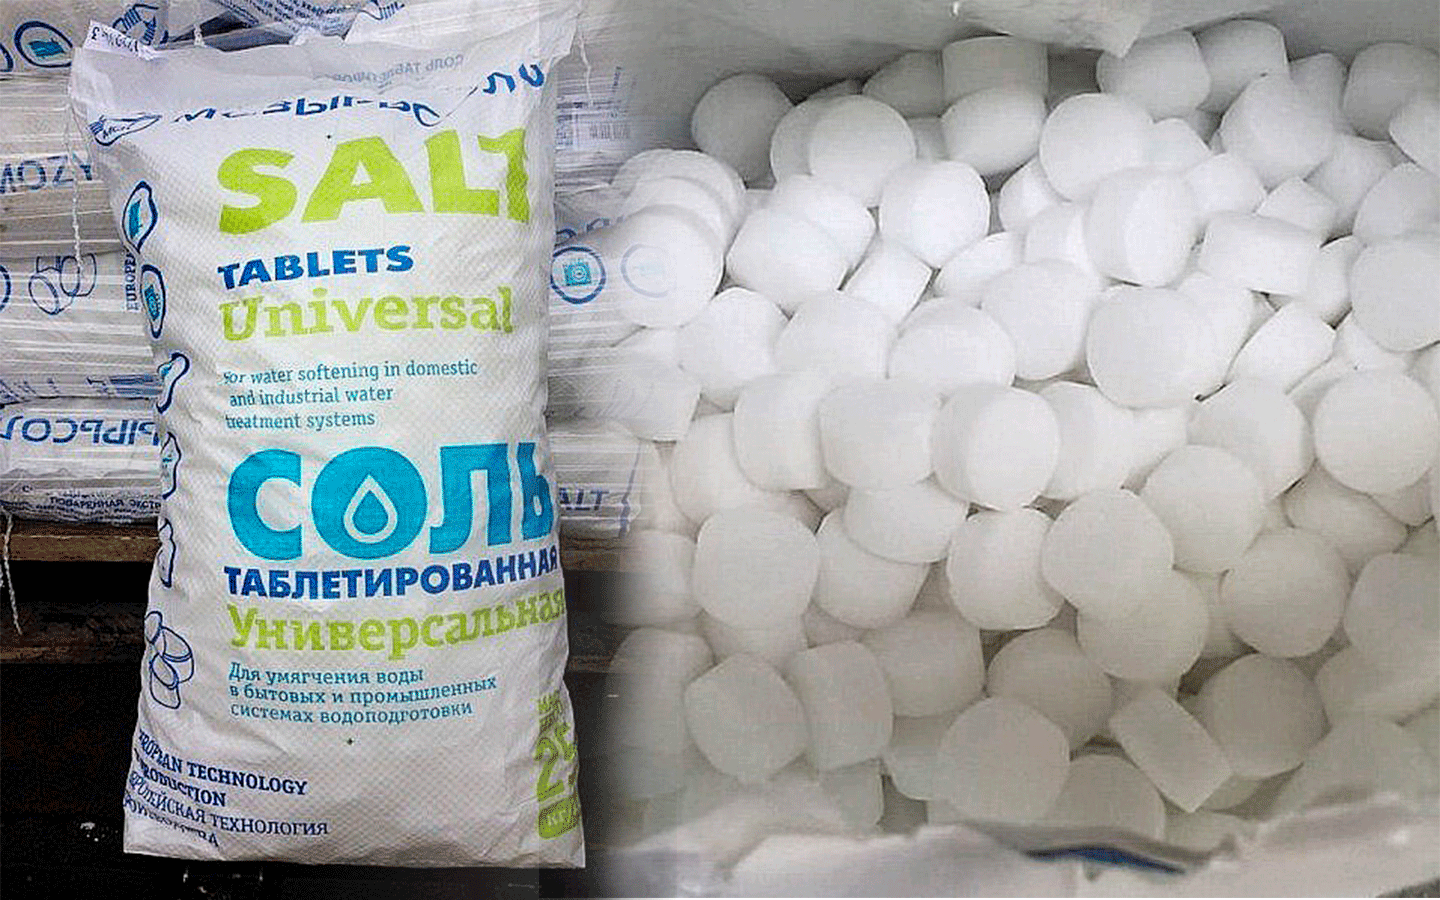 купить соль таблетированную в ростове